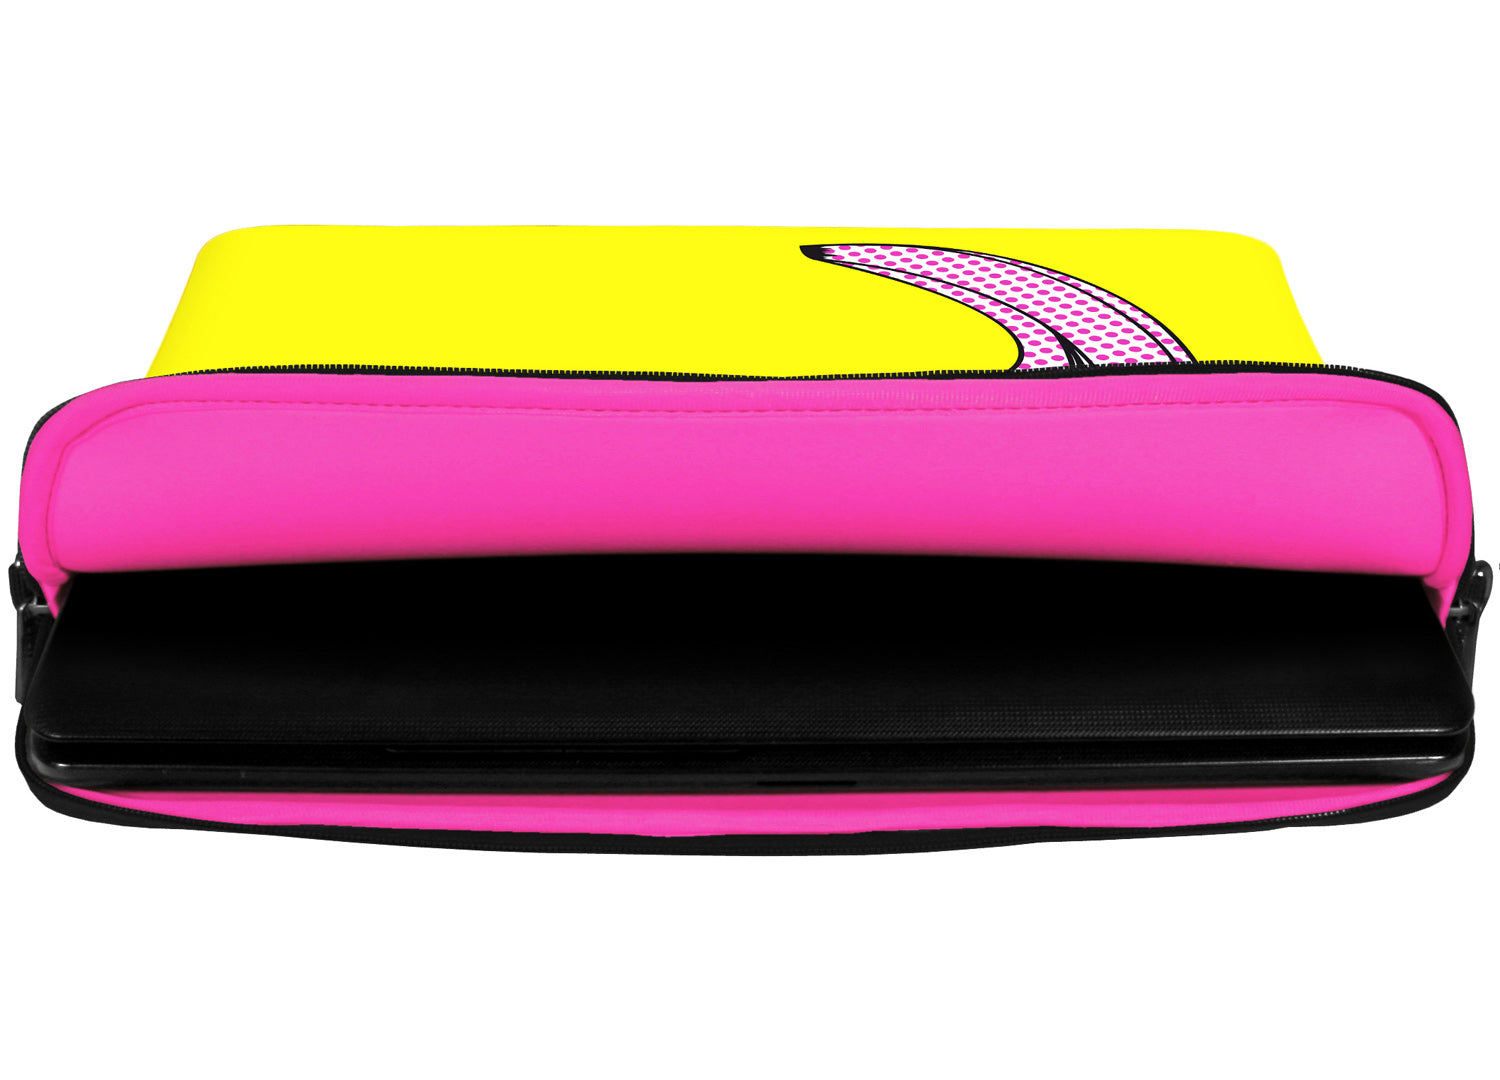 Innenansicht mit Schutzlippen der LS170 Surprise Designer Tasche für Laptop in pink aus wasserabweisendem Neopren